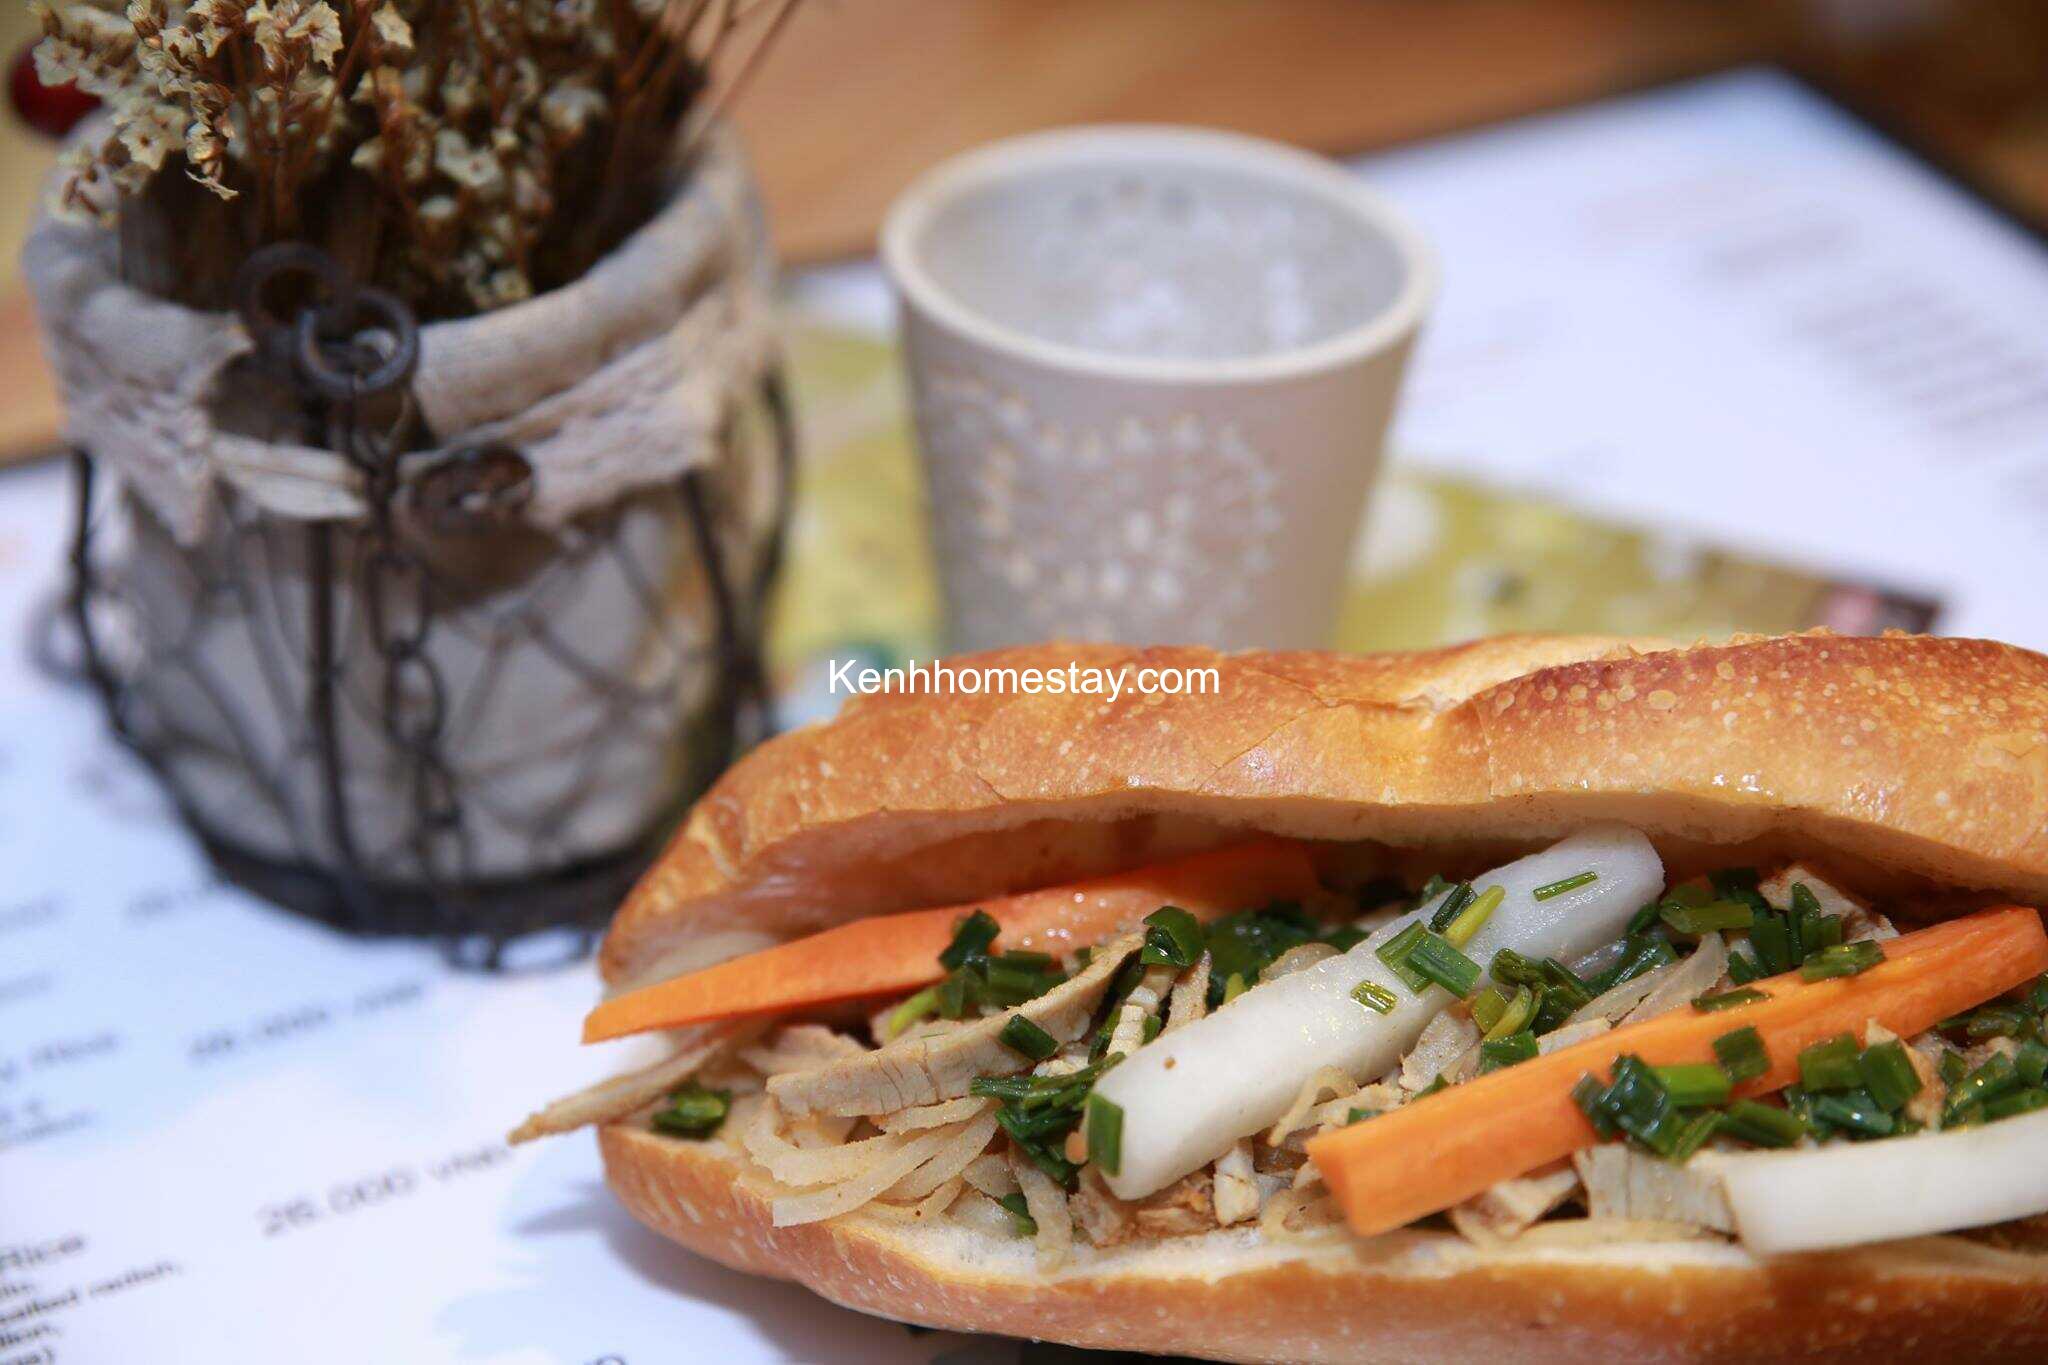 Top 15 Quán bánh mì ngon ở Sài Gòn - TPHCM giá rẻ đông khách nhất